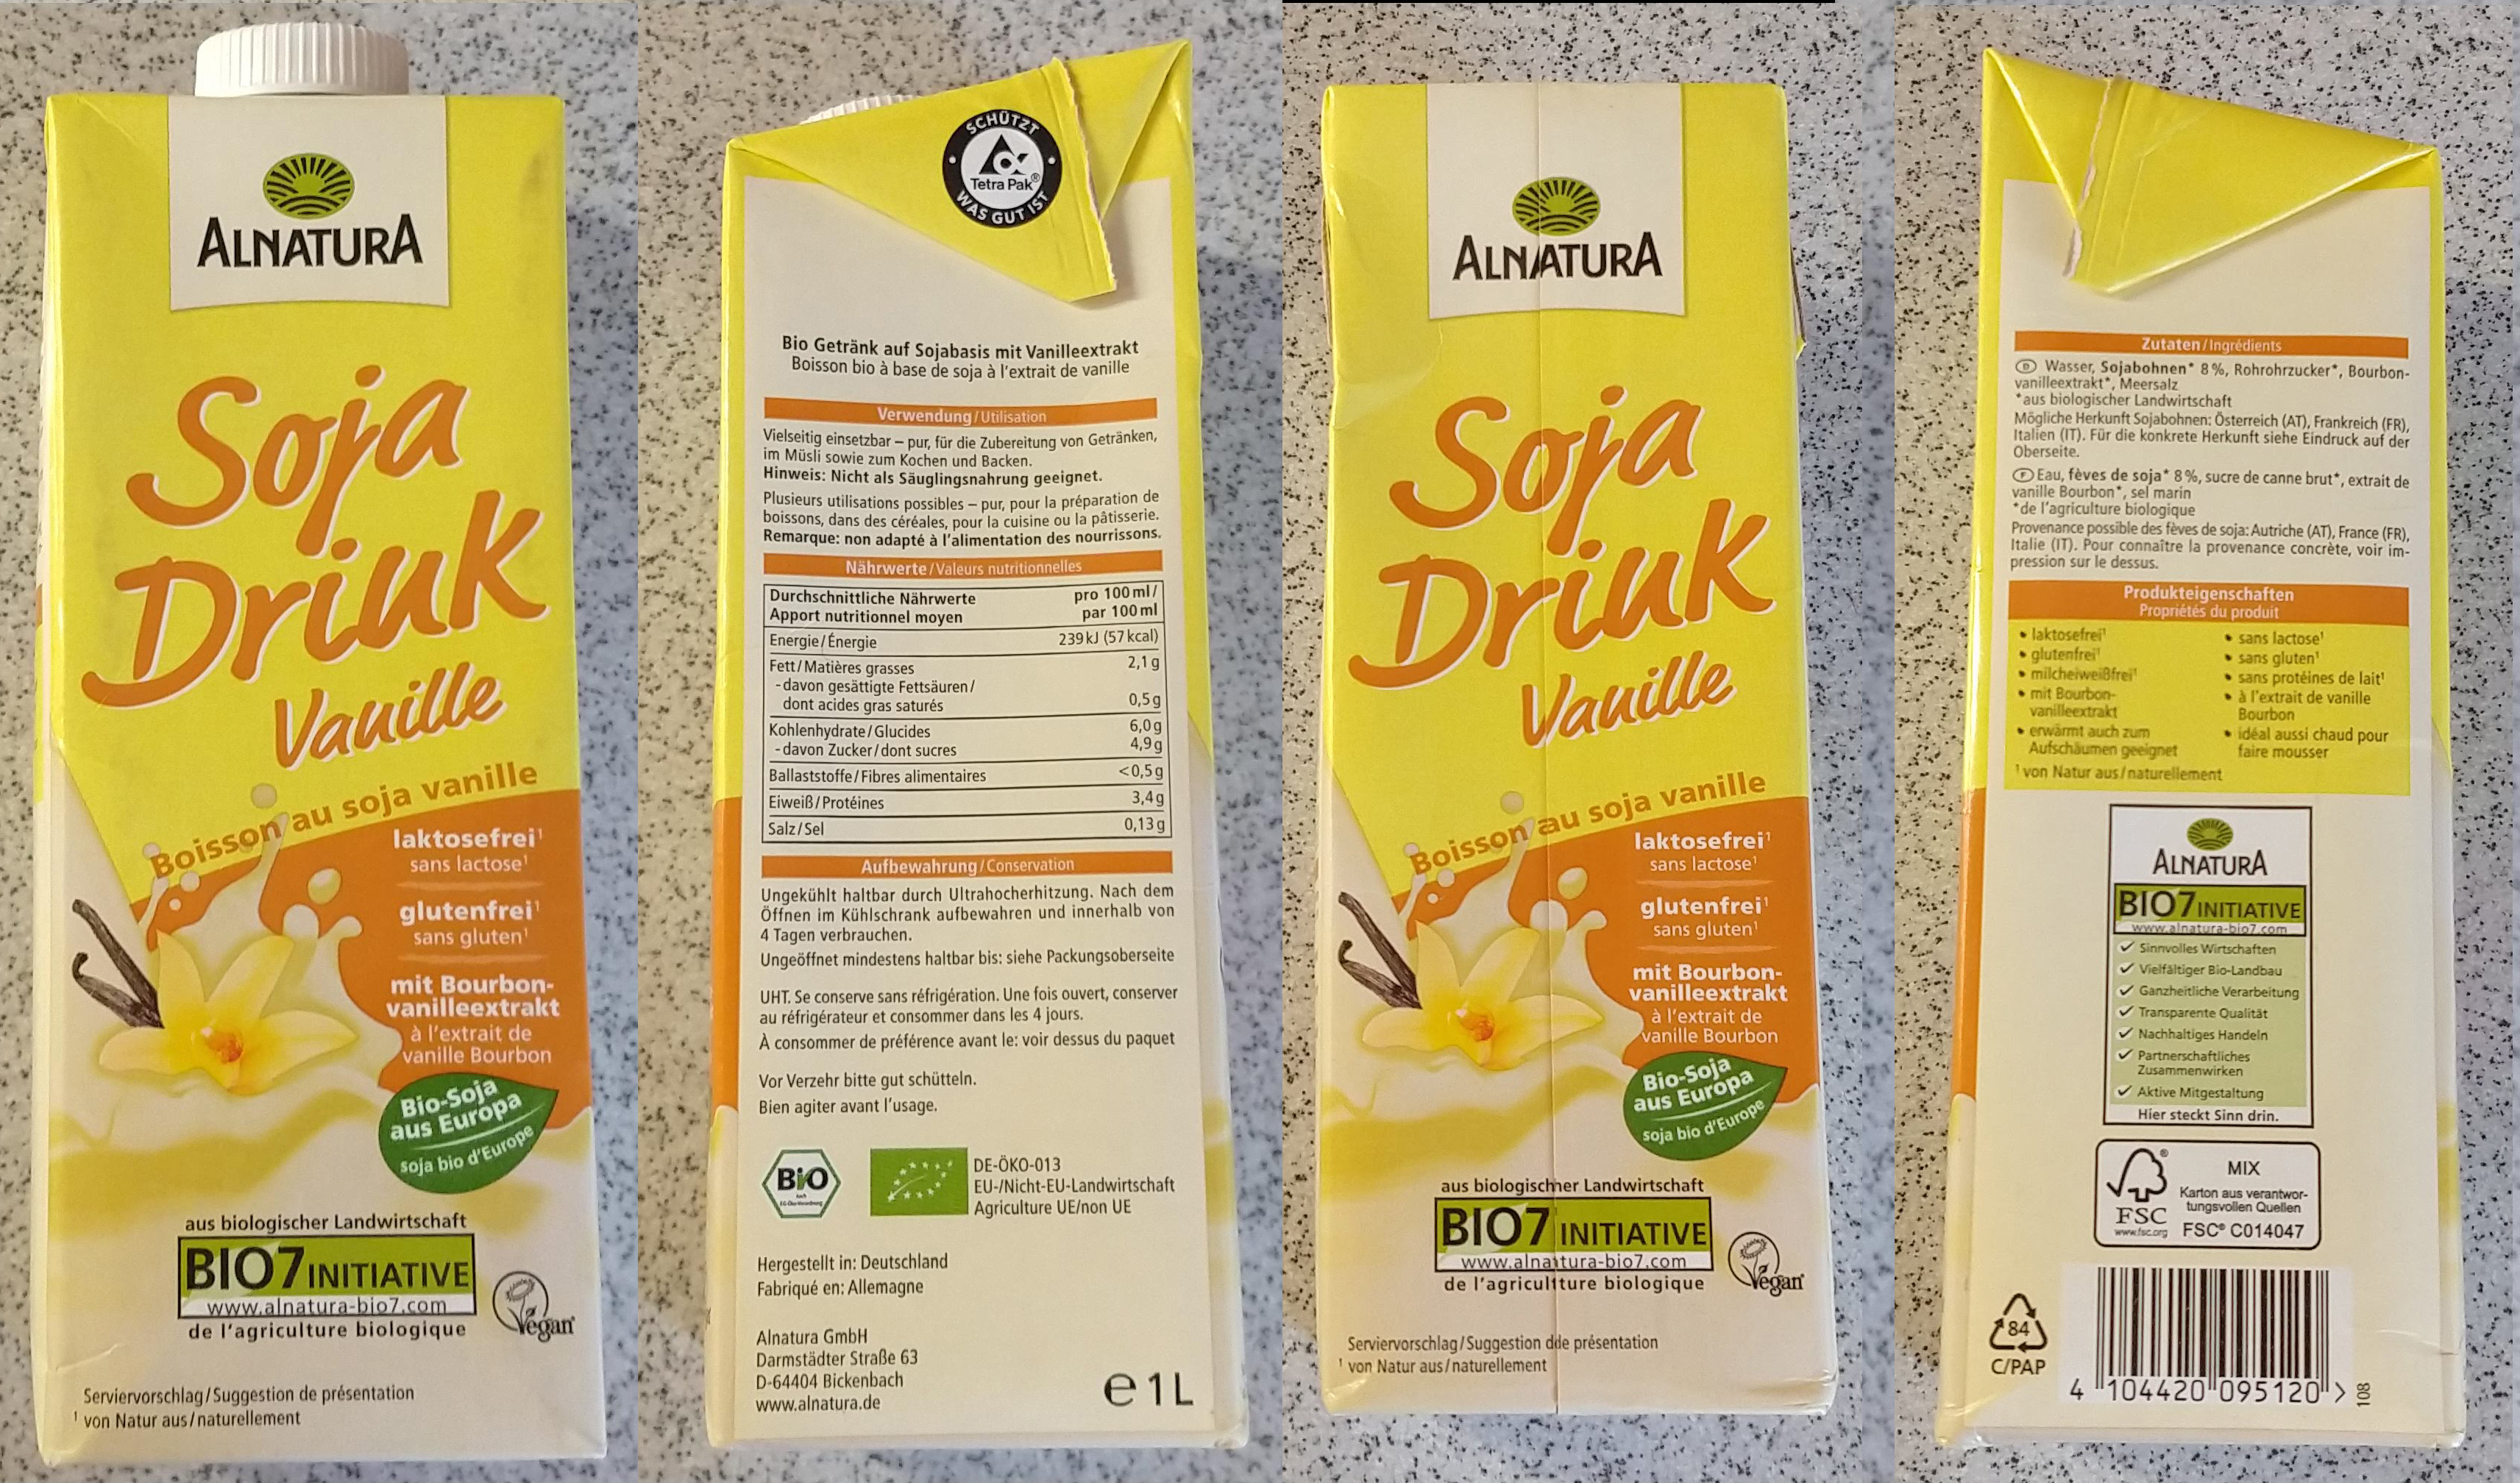 Alnatura Soja Drink Vanille - Alle Infos